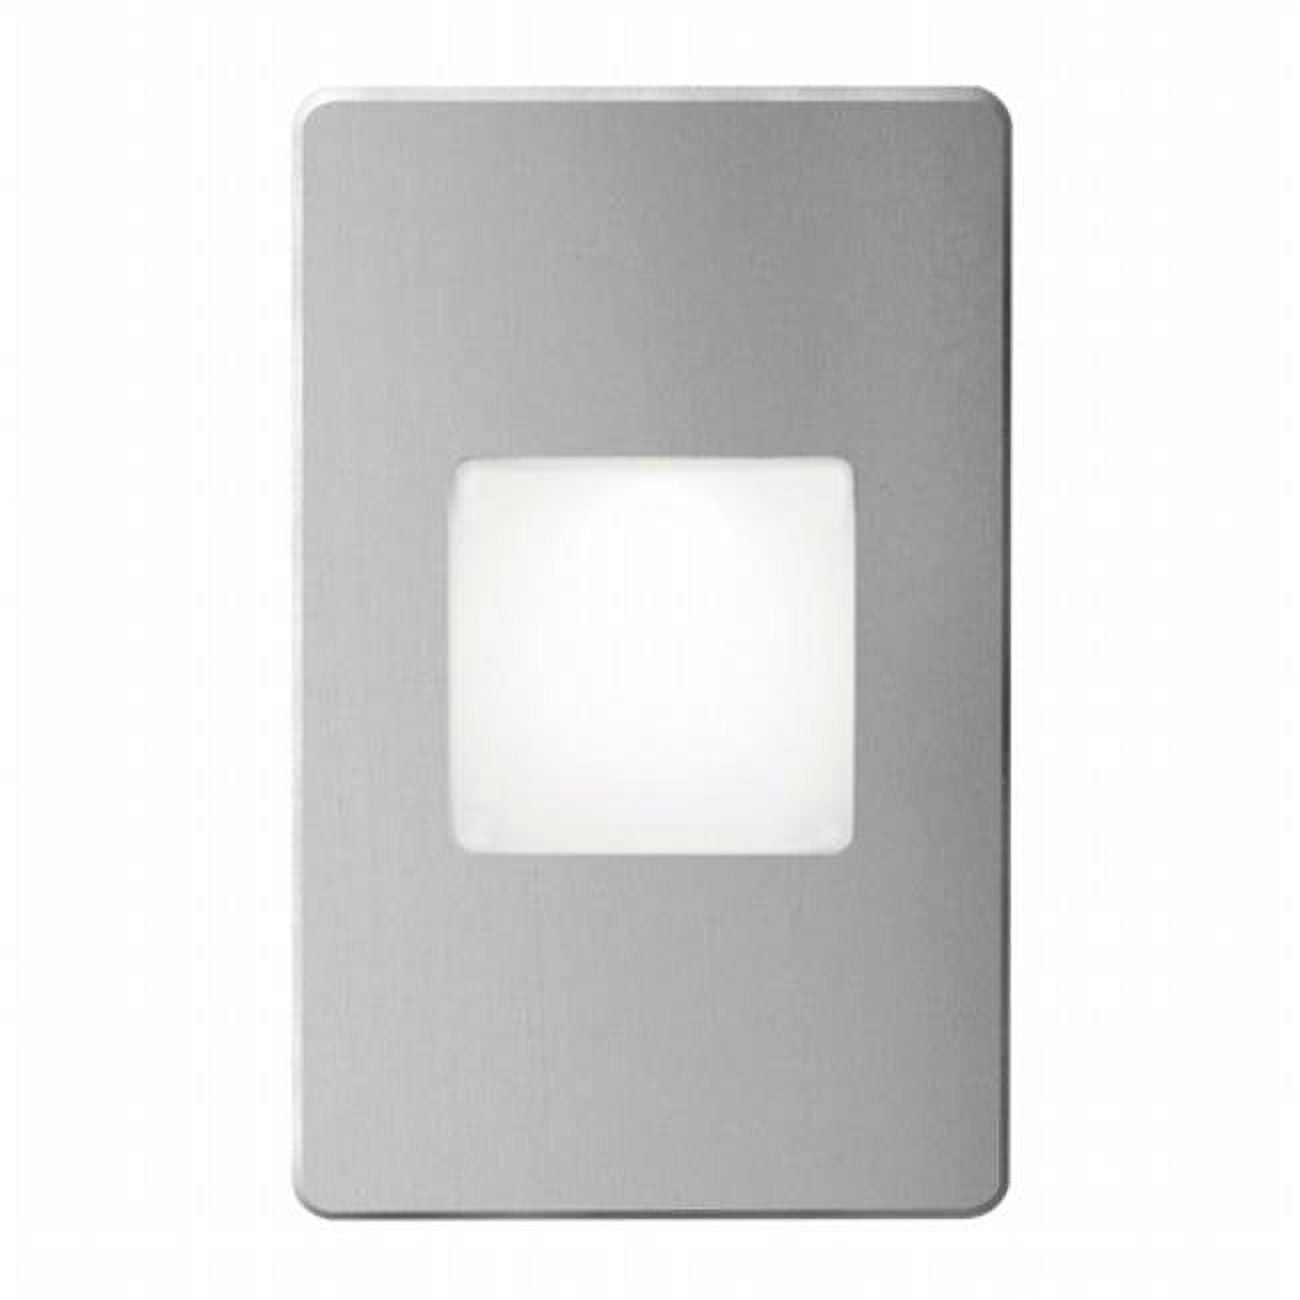 Dledw-245-ba 120v Ac Input, 2700k, 3.3w Ip65, Brushed Aluminum Wall Led Light With White Lens